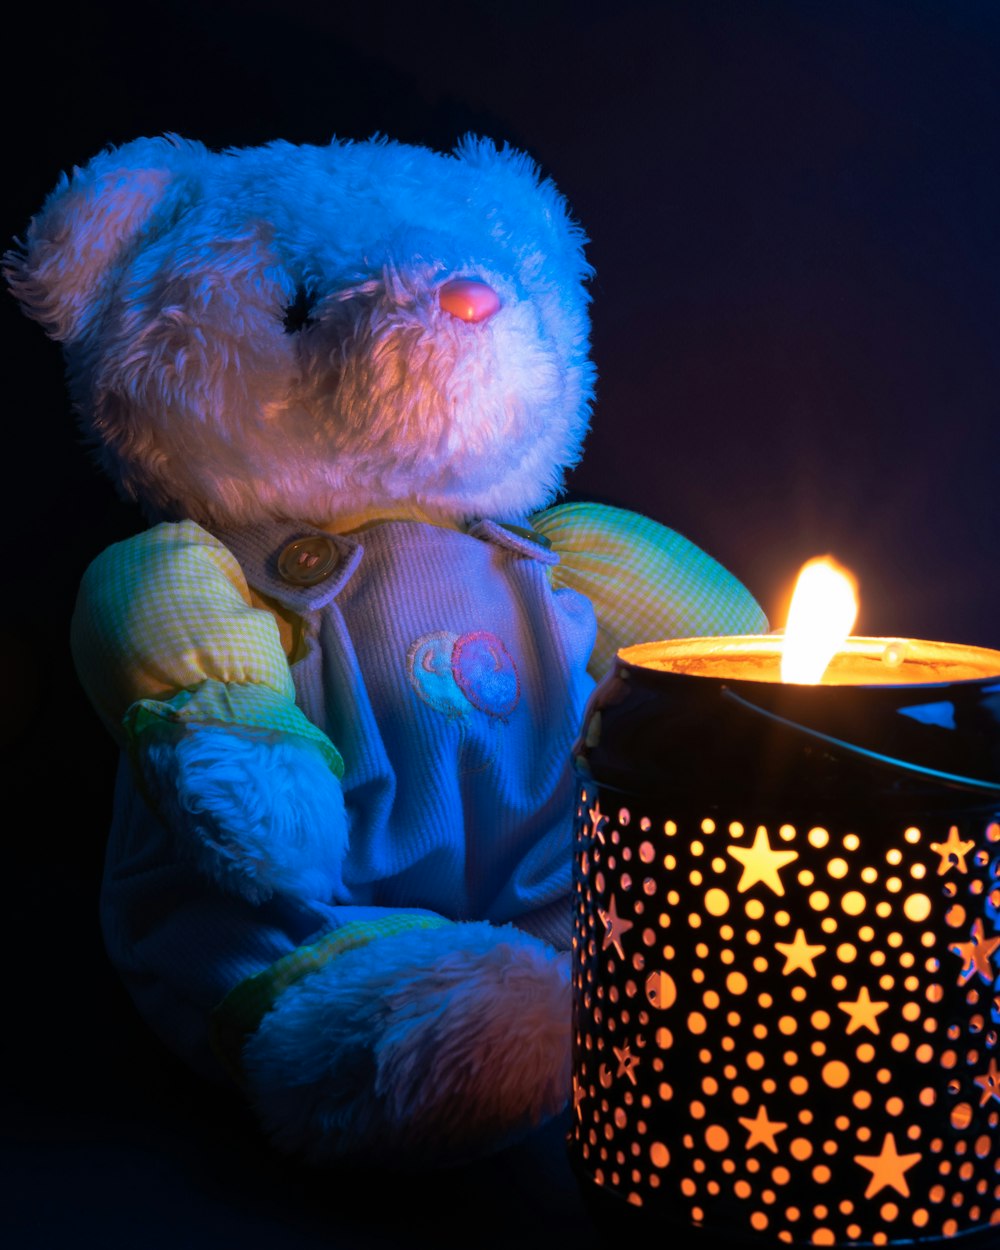 juguete de peluche de oso blanco sosteniendo vela encendida